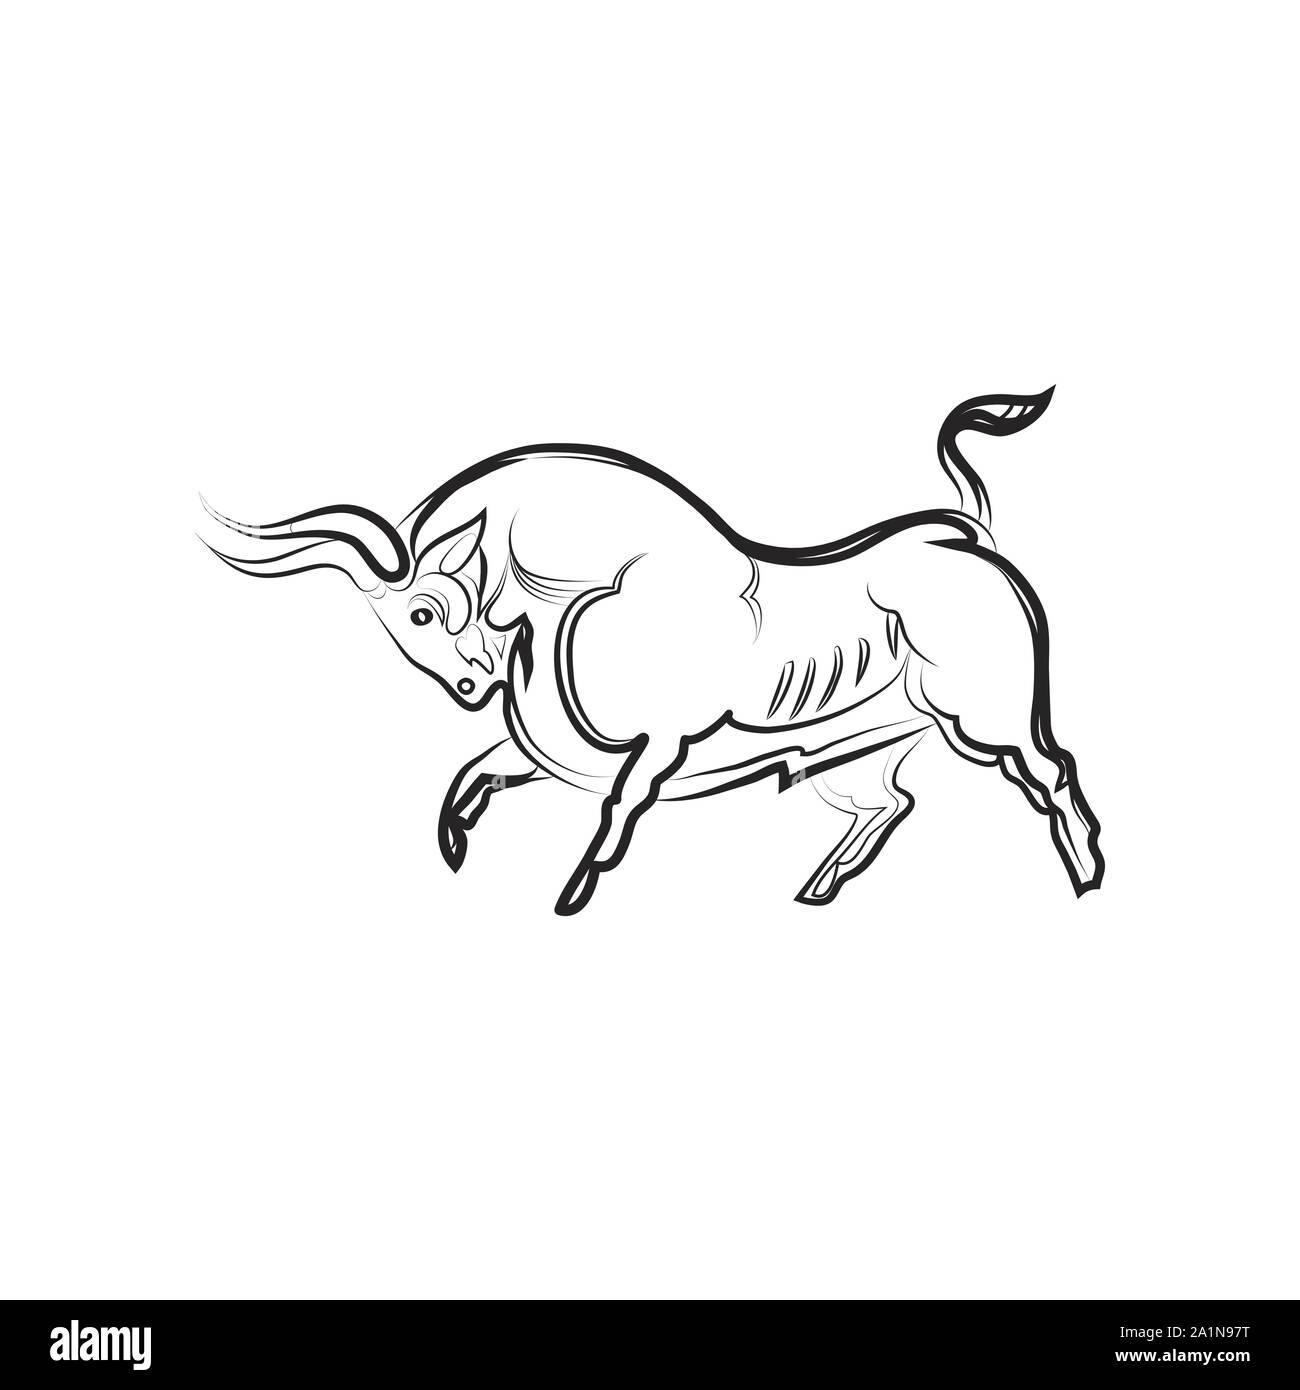 Giovane forte bull in fieri pongono. Disegno a mano. In bianco e nero il vettore bull silhouette isolato. Idea per tattoo, colorazione, zenart, adesivi, logo, ico Illustrazione Vettoriale